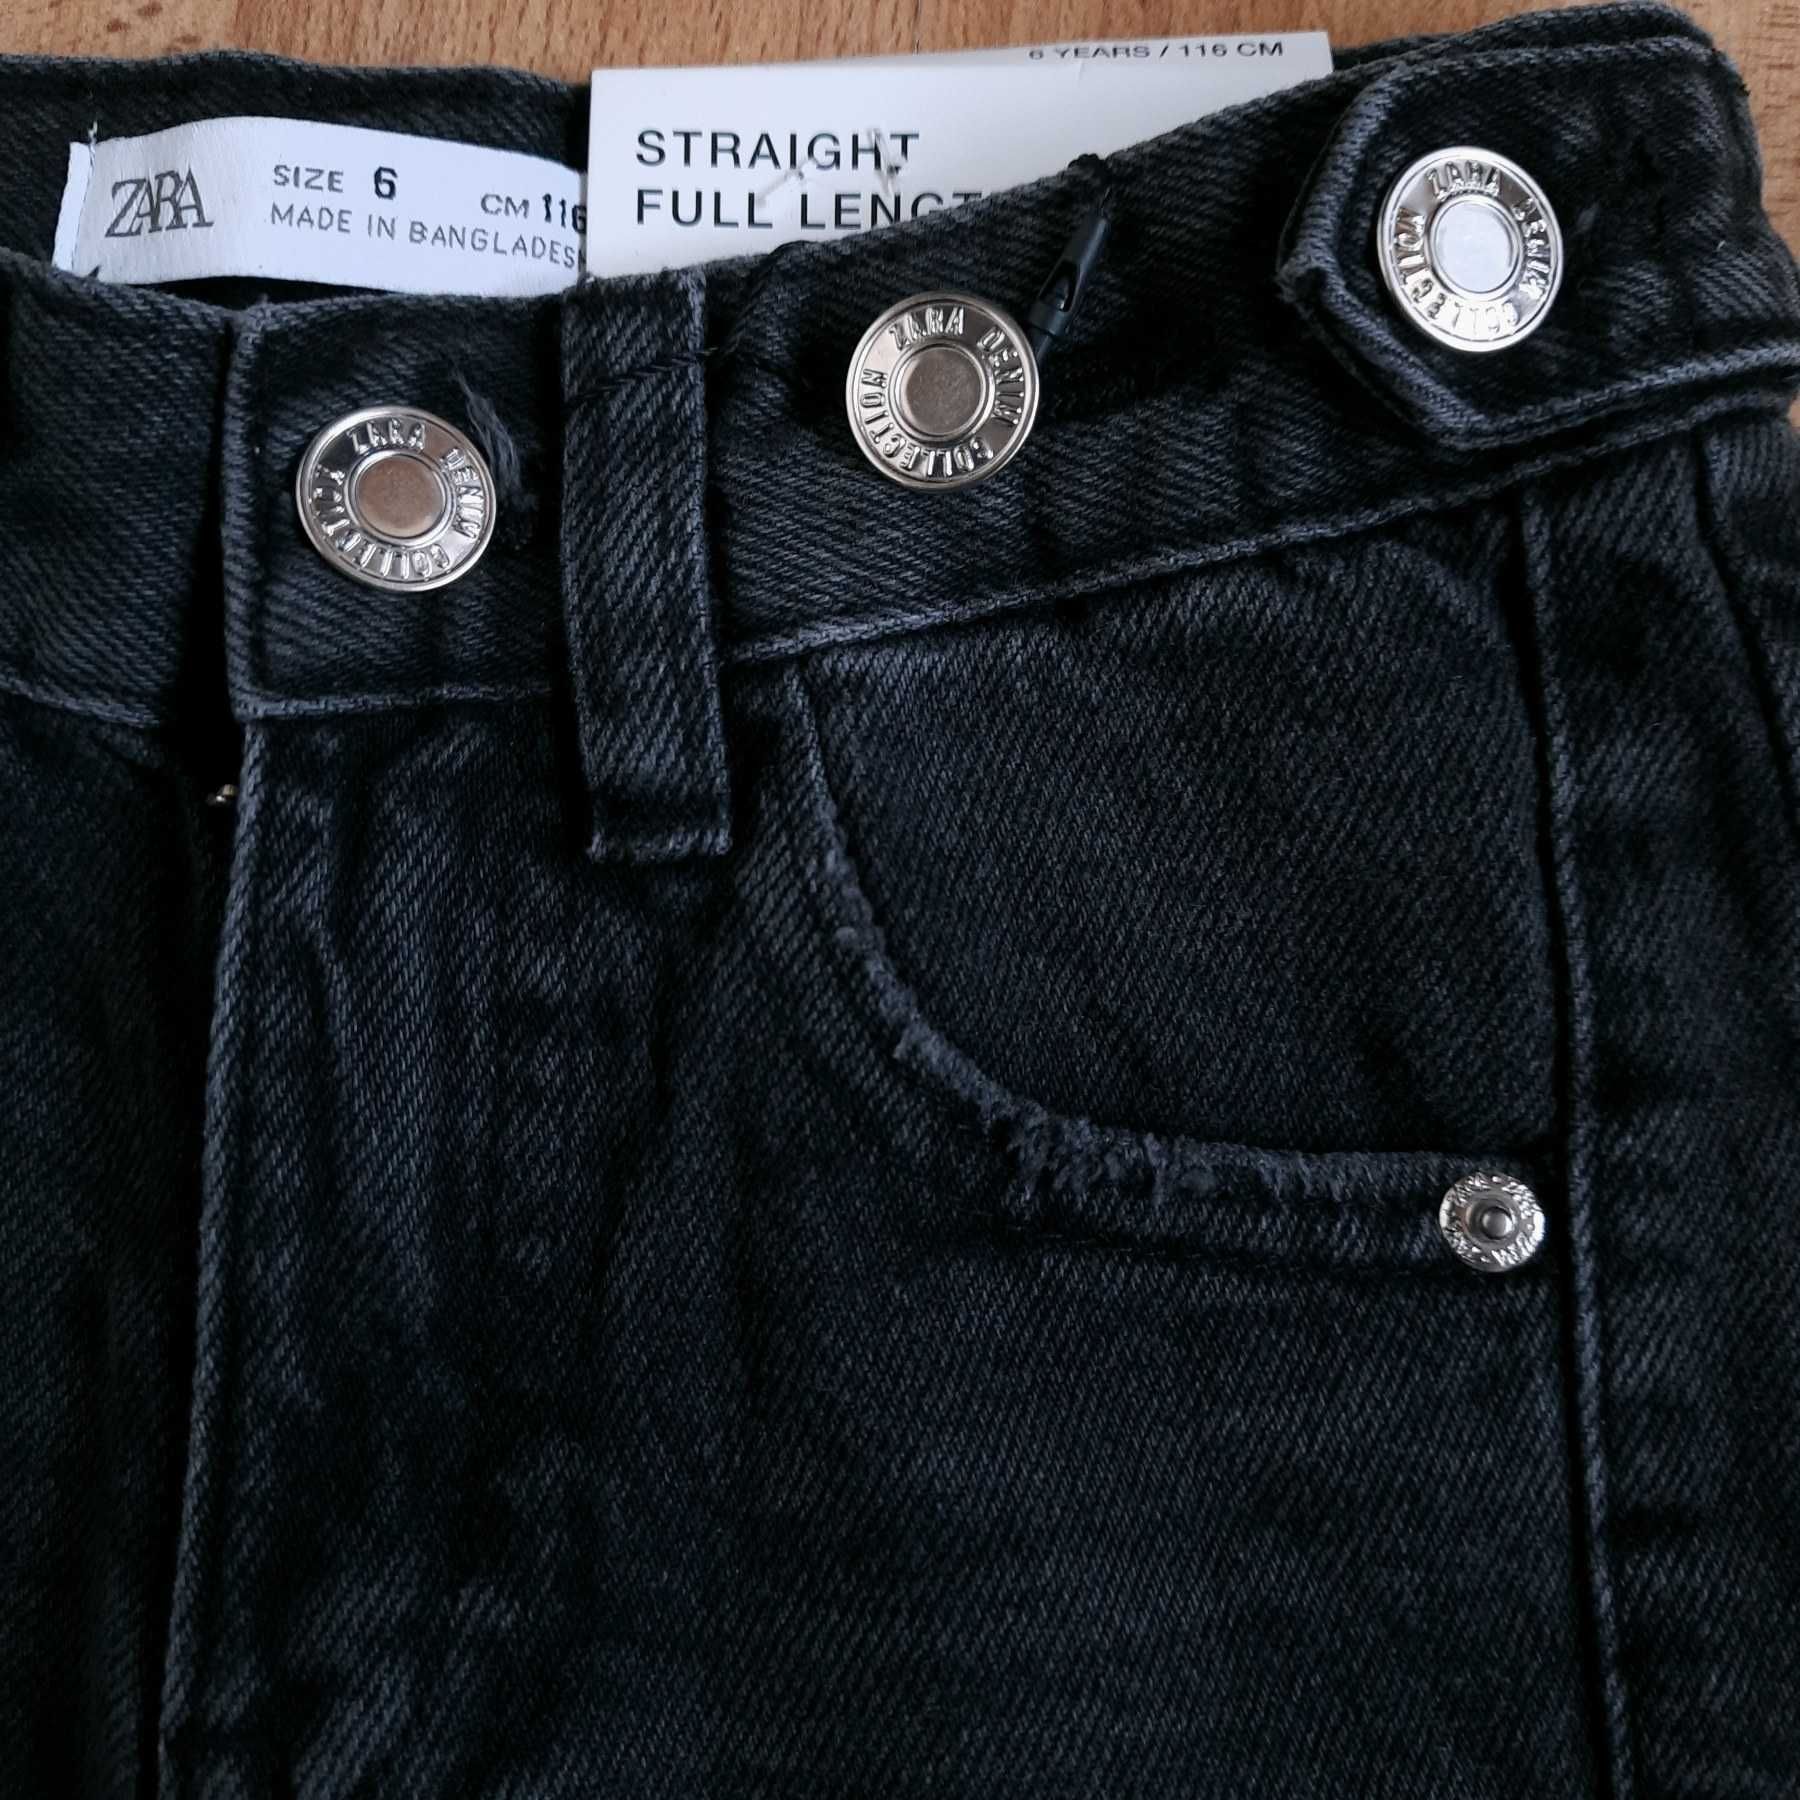 Нова жилетка, джинси та світшот Zara на 6 років. 116 еко шкіра зара